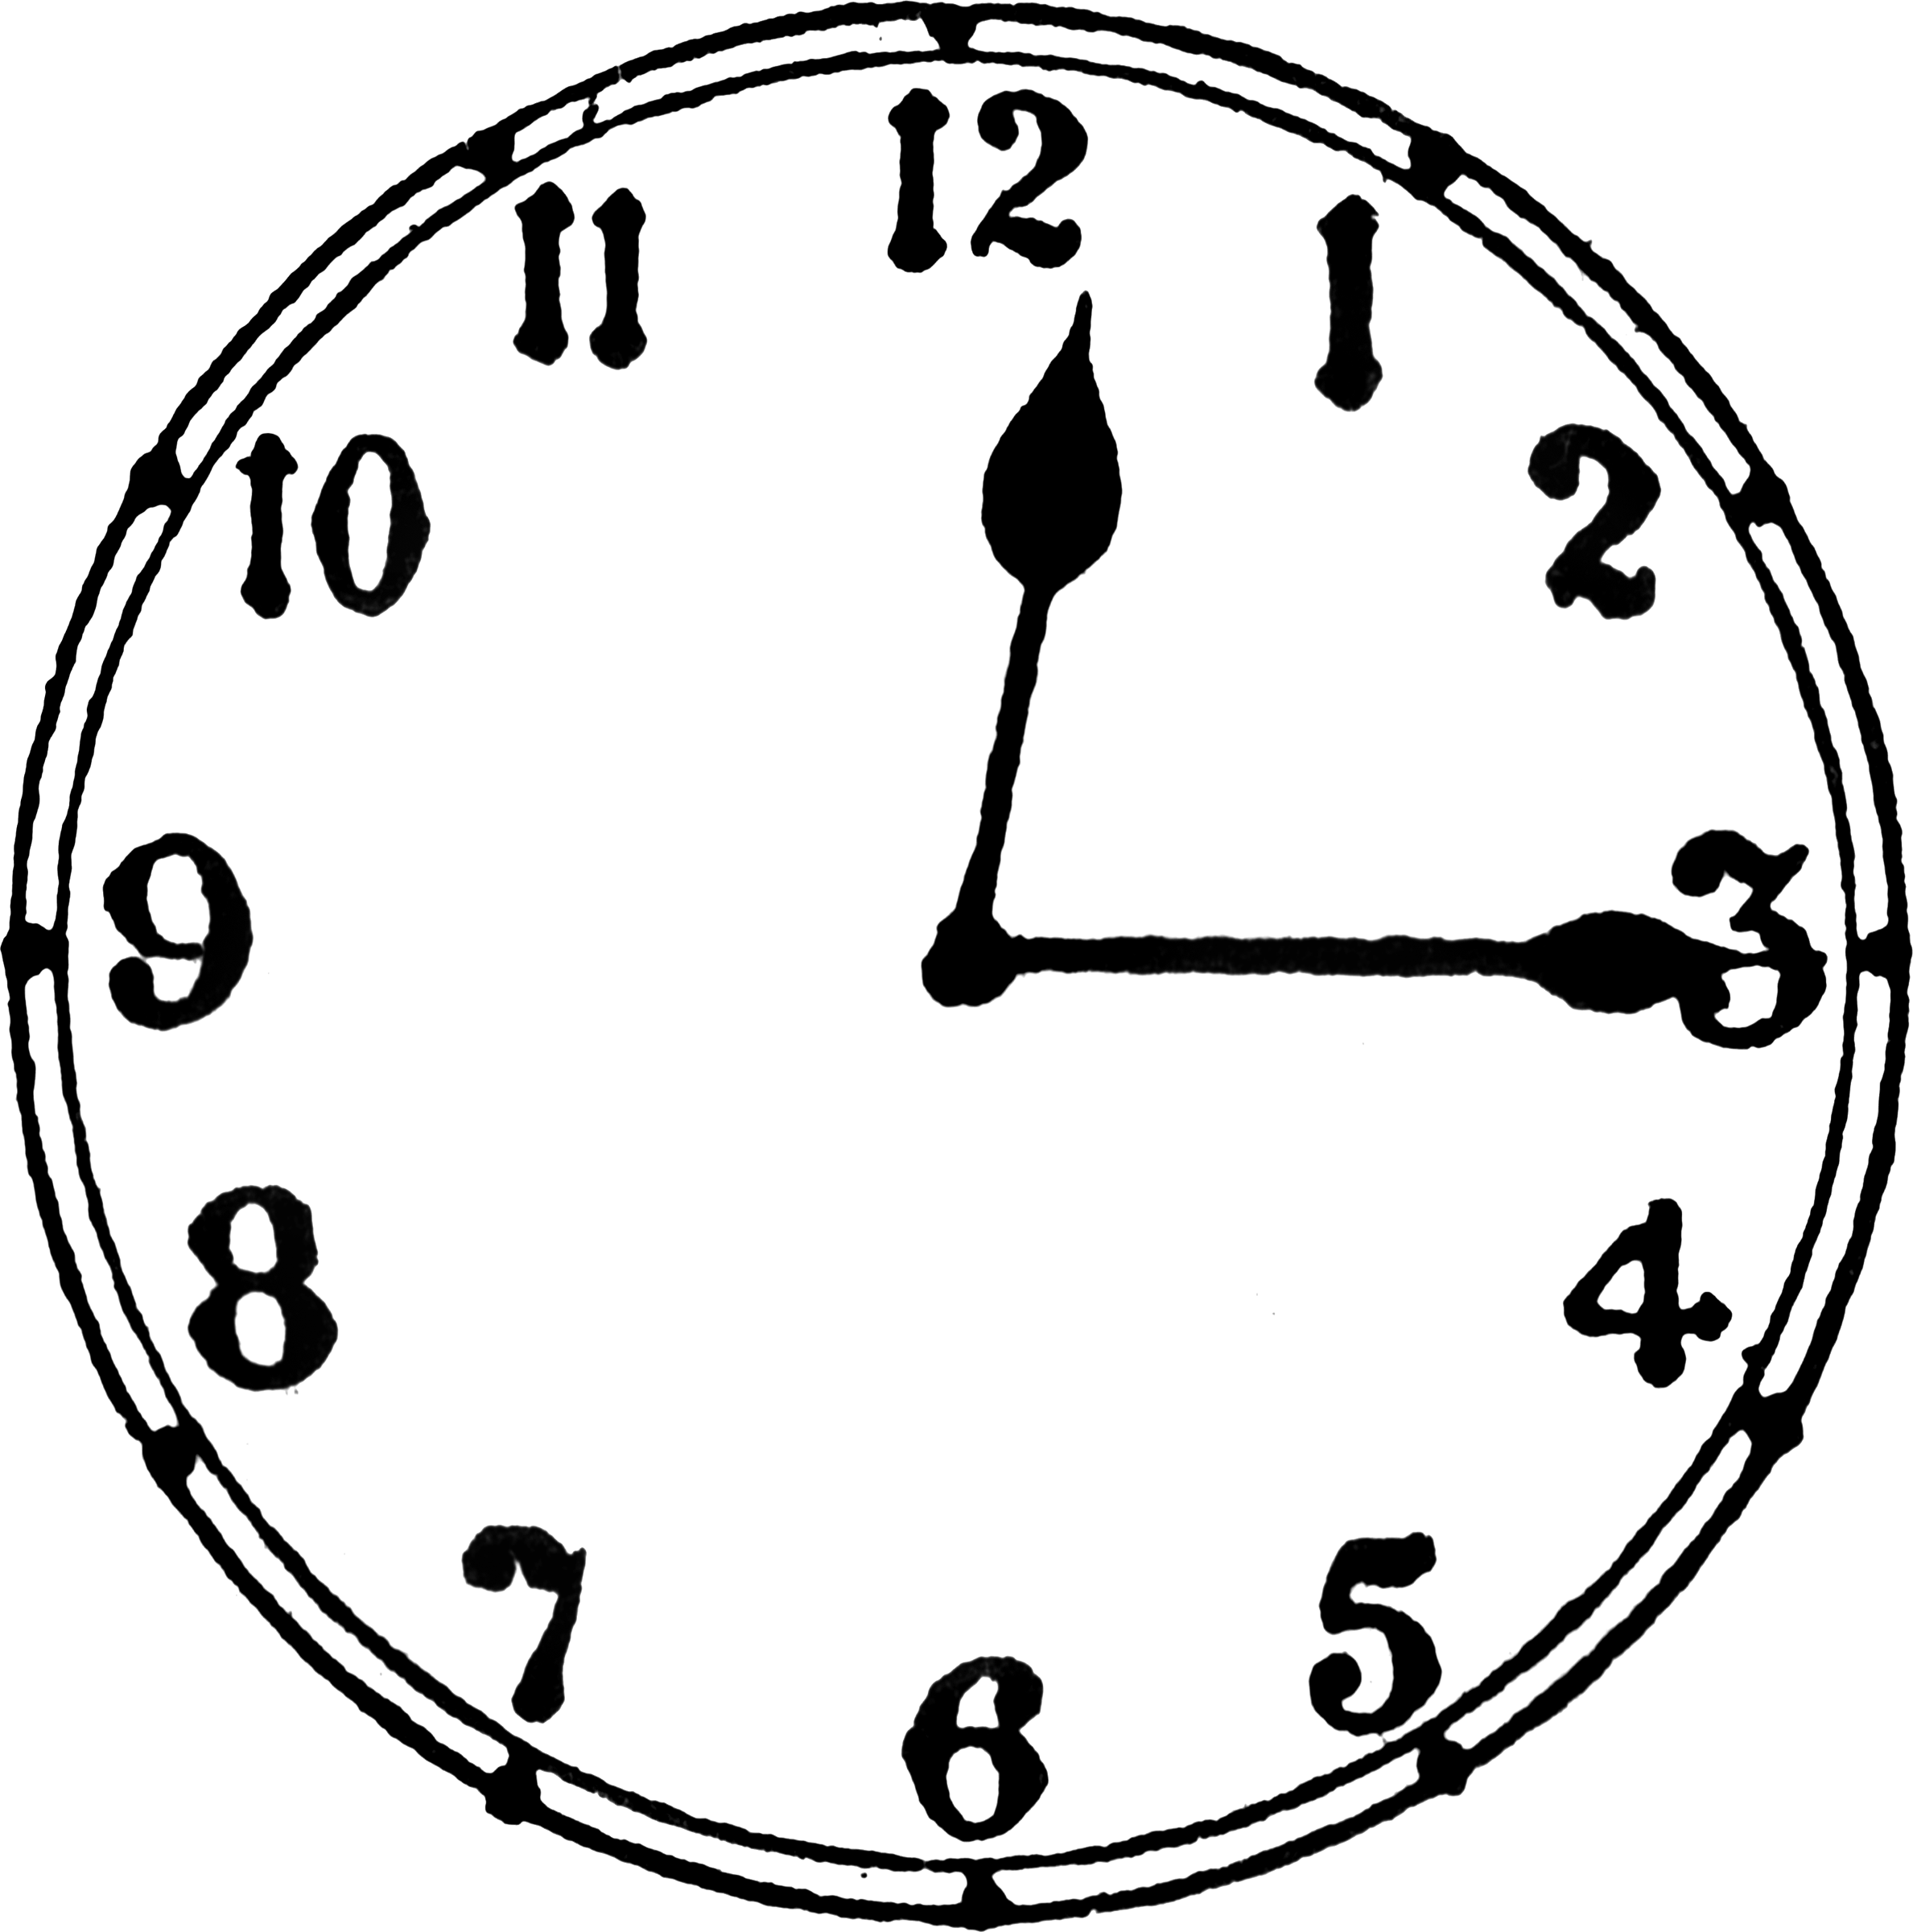 Е 15 минут. Часы 12:15. Циферблат 12 часов 15 минут. Часы рисунок циферблат. 12 Часов 15 минут на часах.